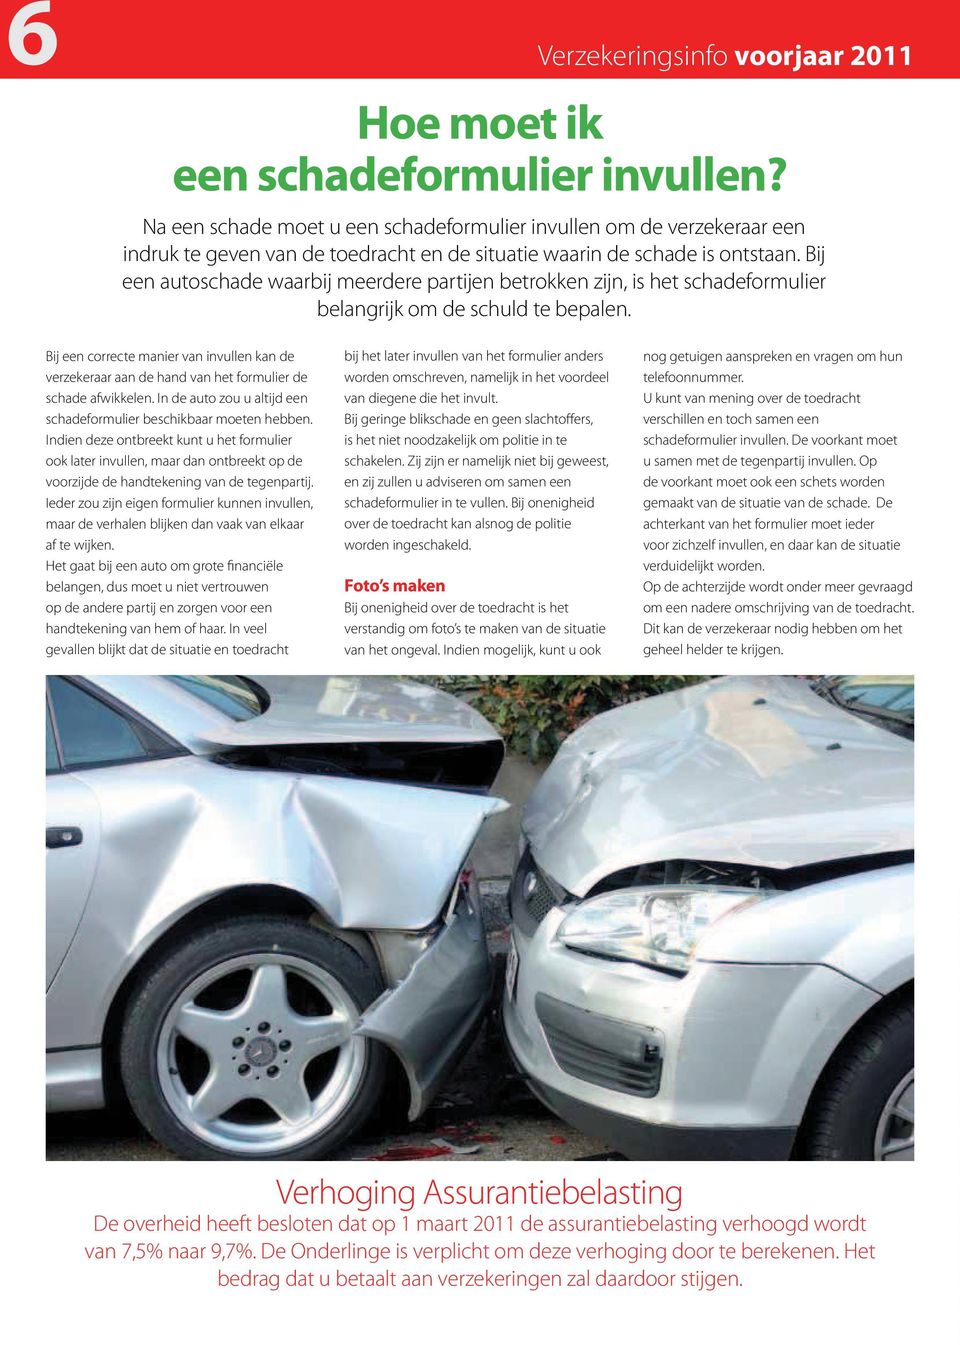 Bij een autoschade waarbij meerdere partijen betrokken zijn, is het schadeformulier belangrijk om de schuld te bepalen.